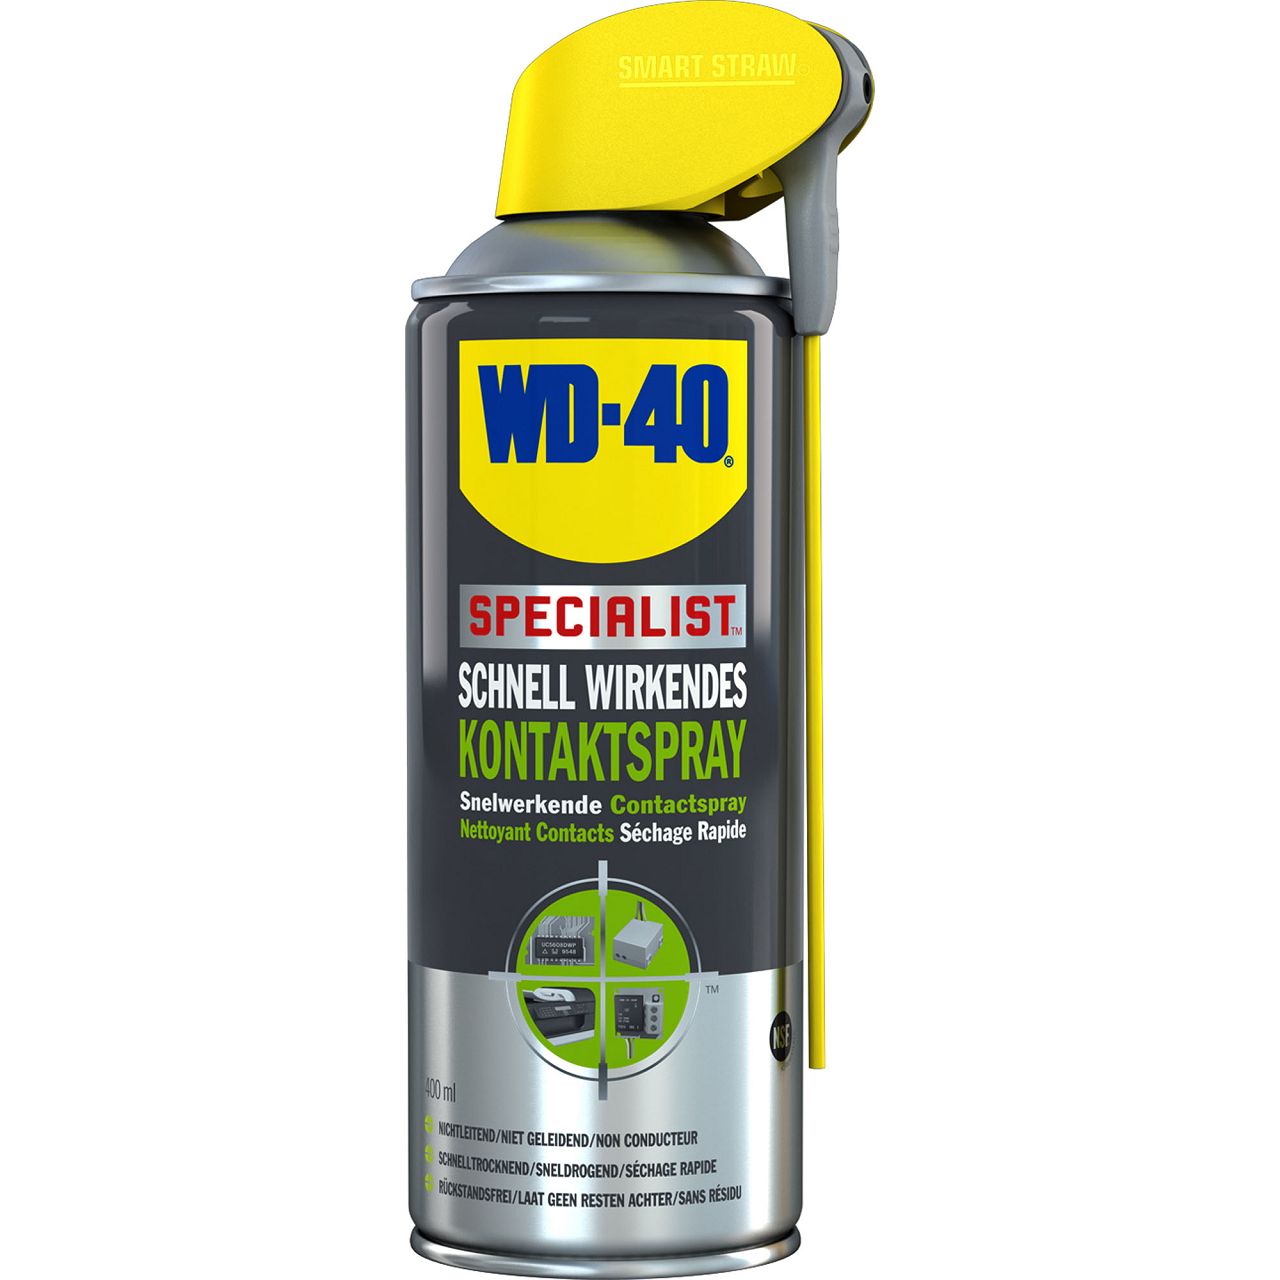 WD-40 SPECIALIST 49368 Kontaktspray Kontaktreiniger Elektronikspray 12x 400ml